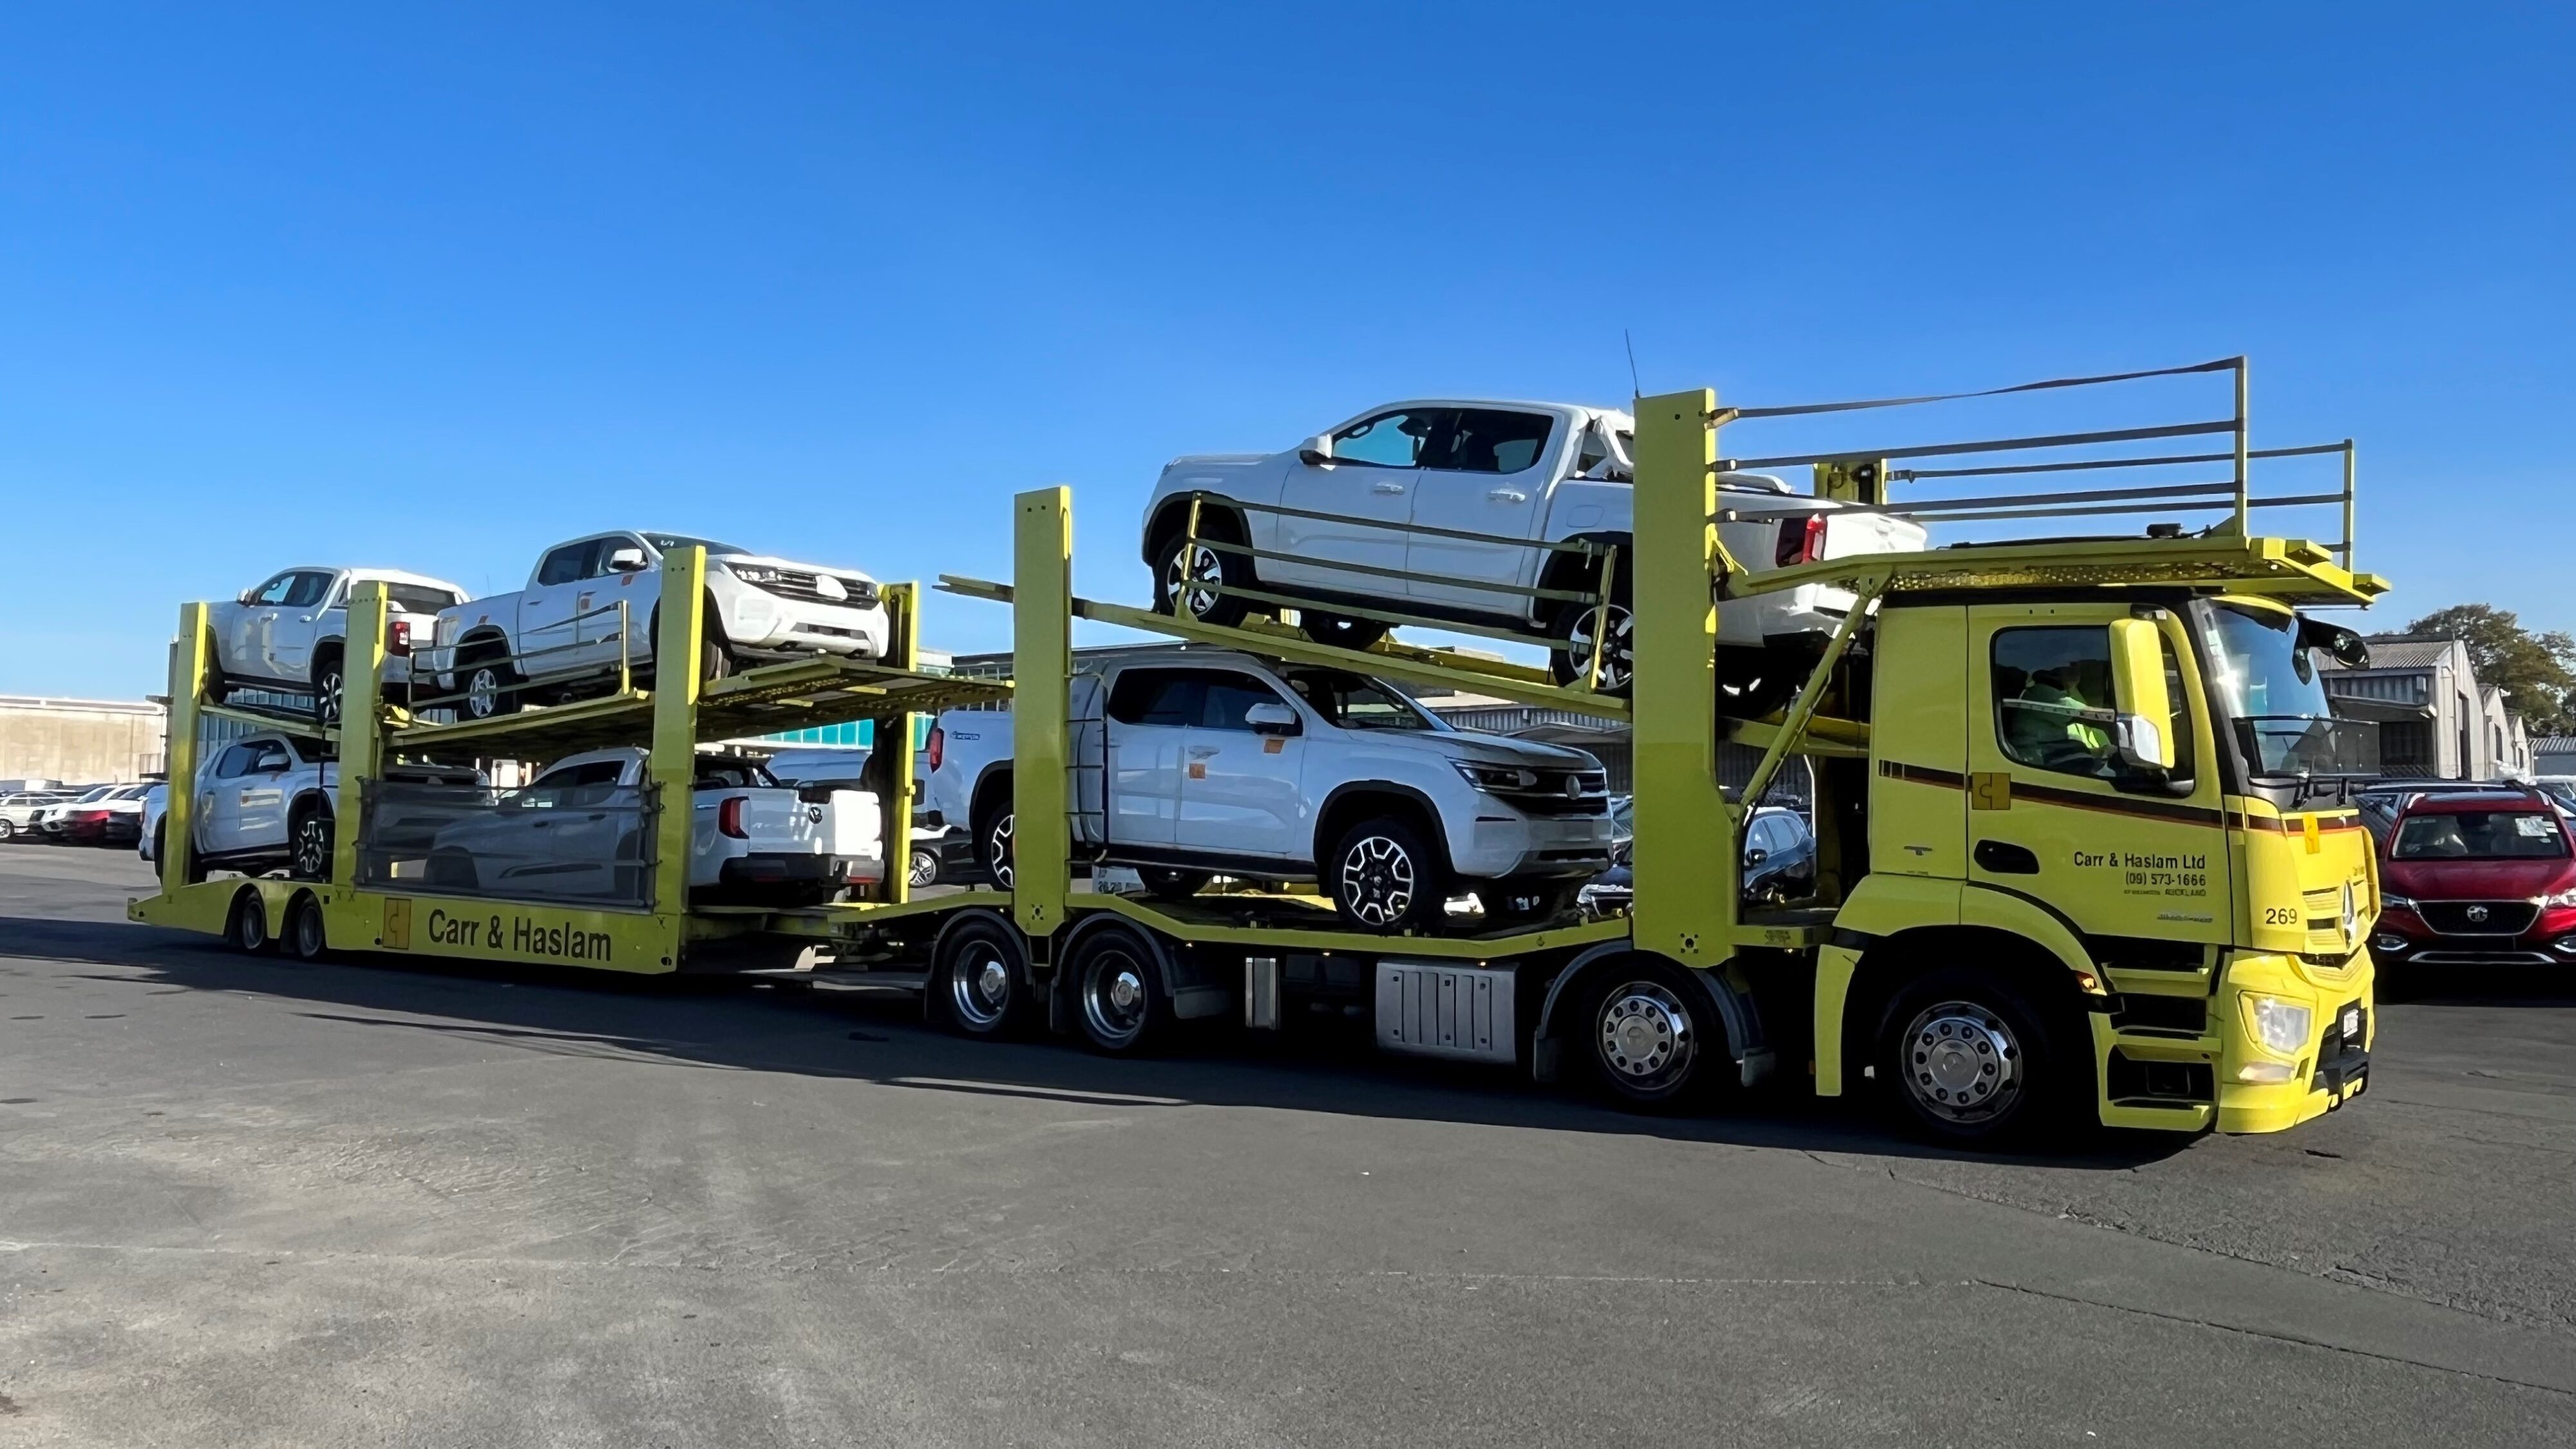 VW Amarok arrives in NZ